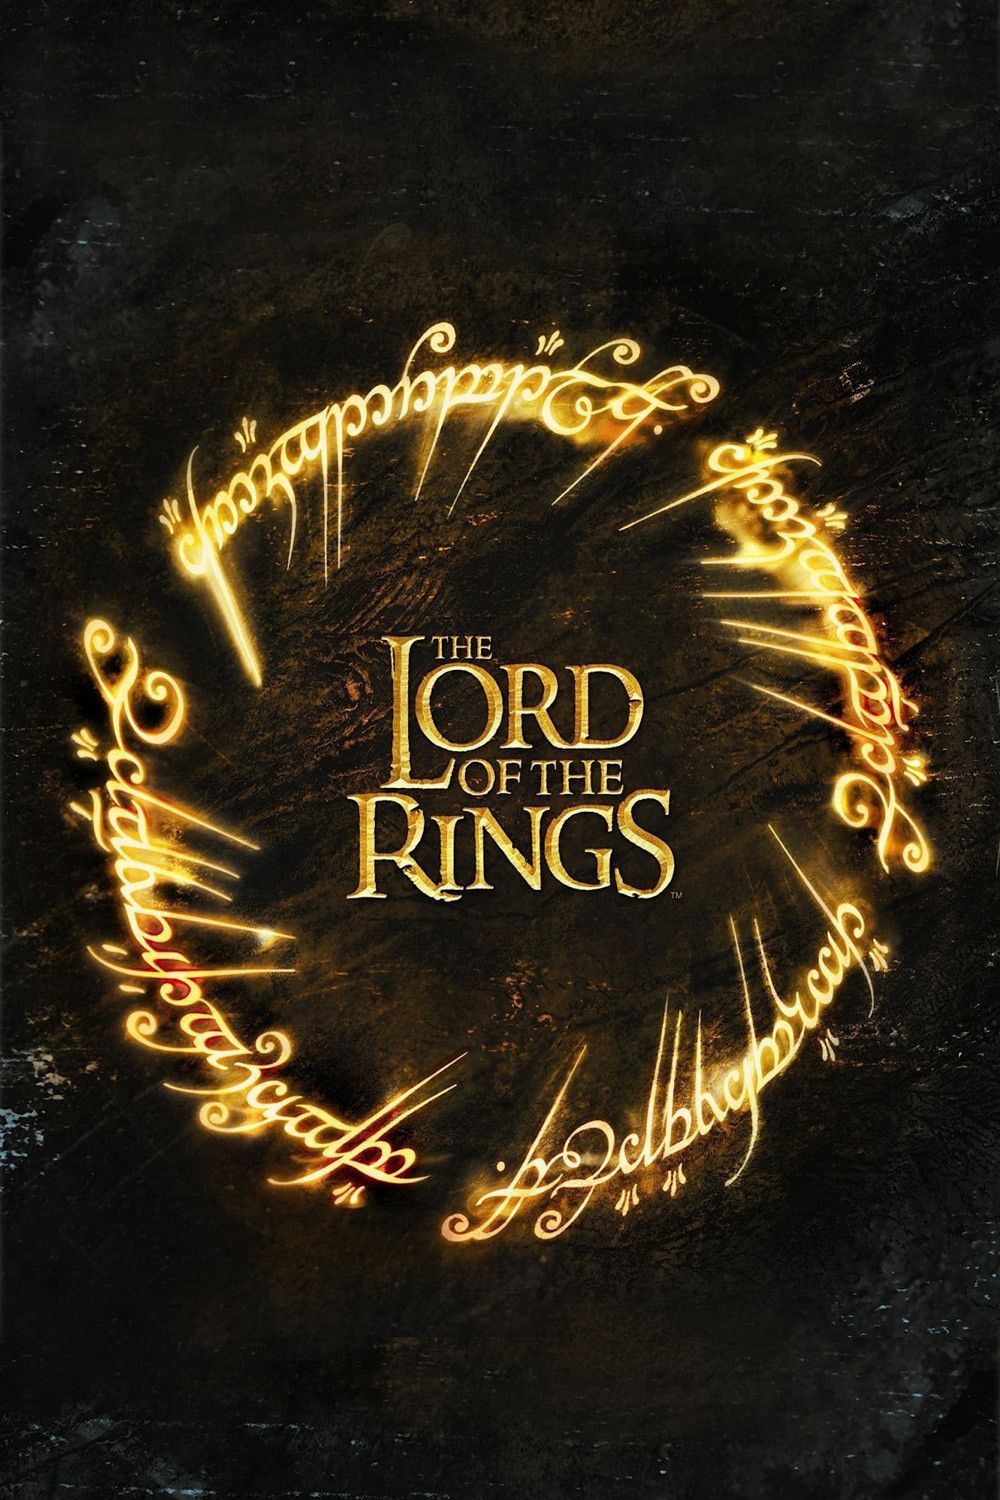 Poster Waralaba Lord of the Rings dengan Kata-kata Emas Menyerupai Cincin